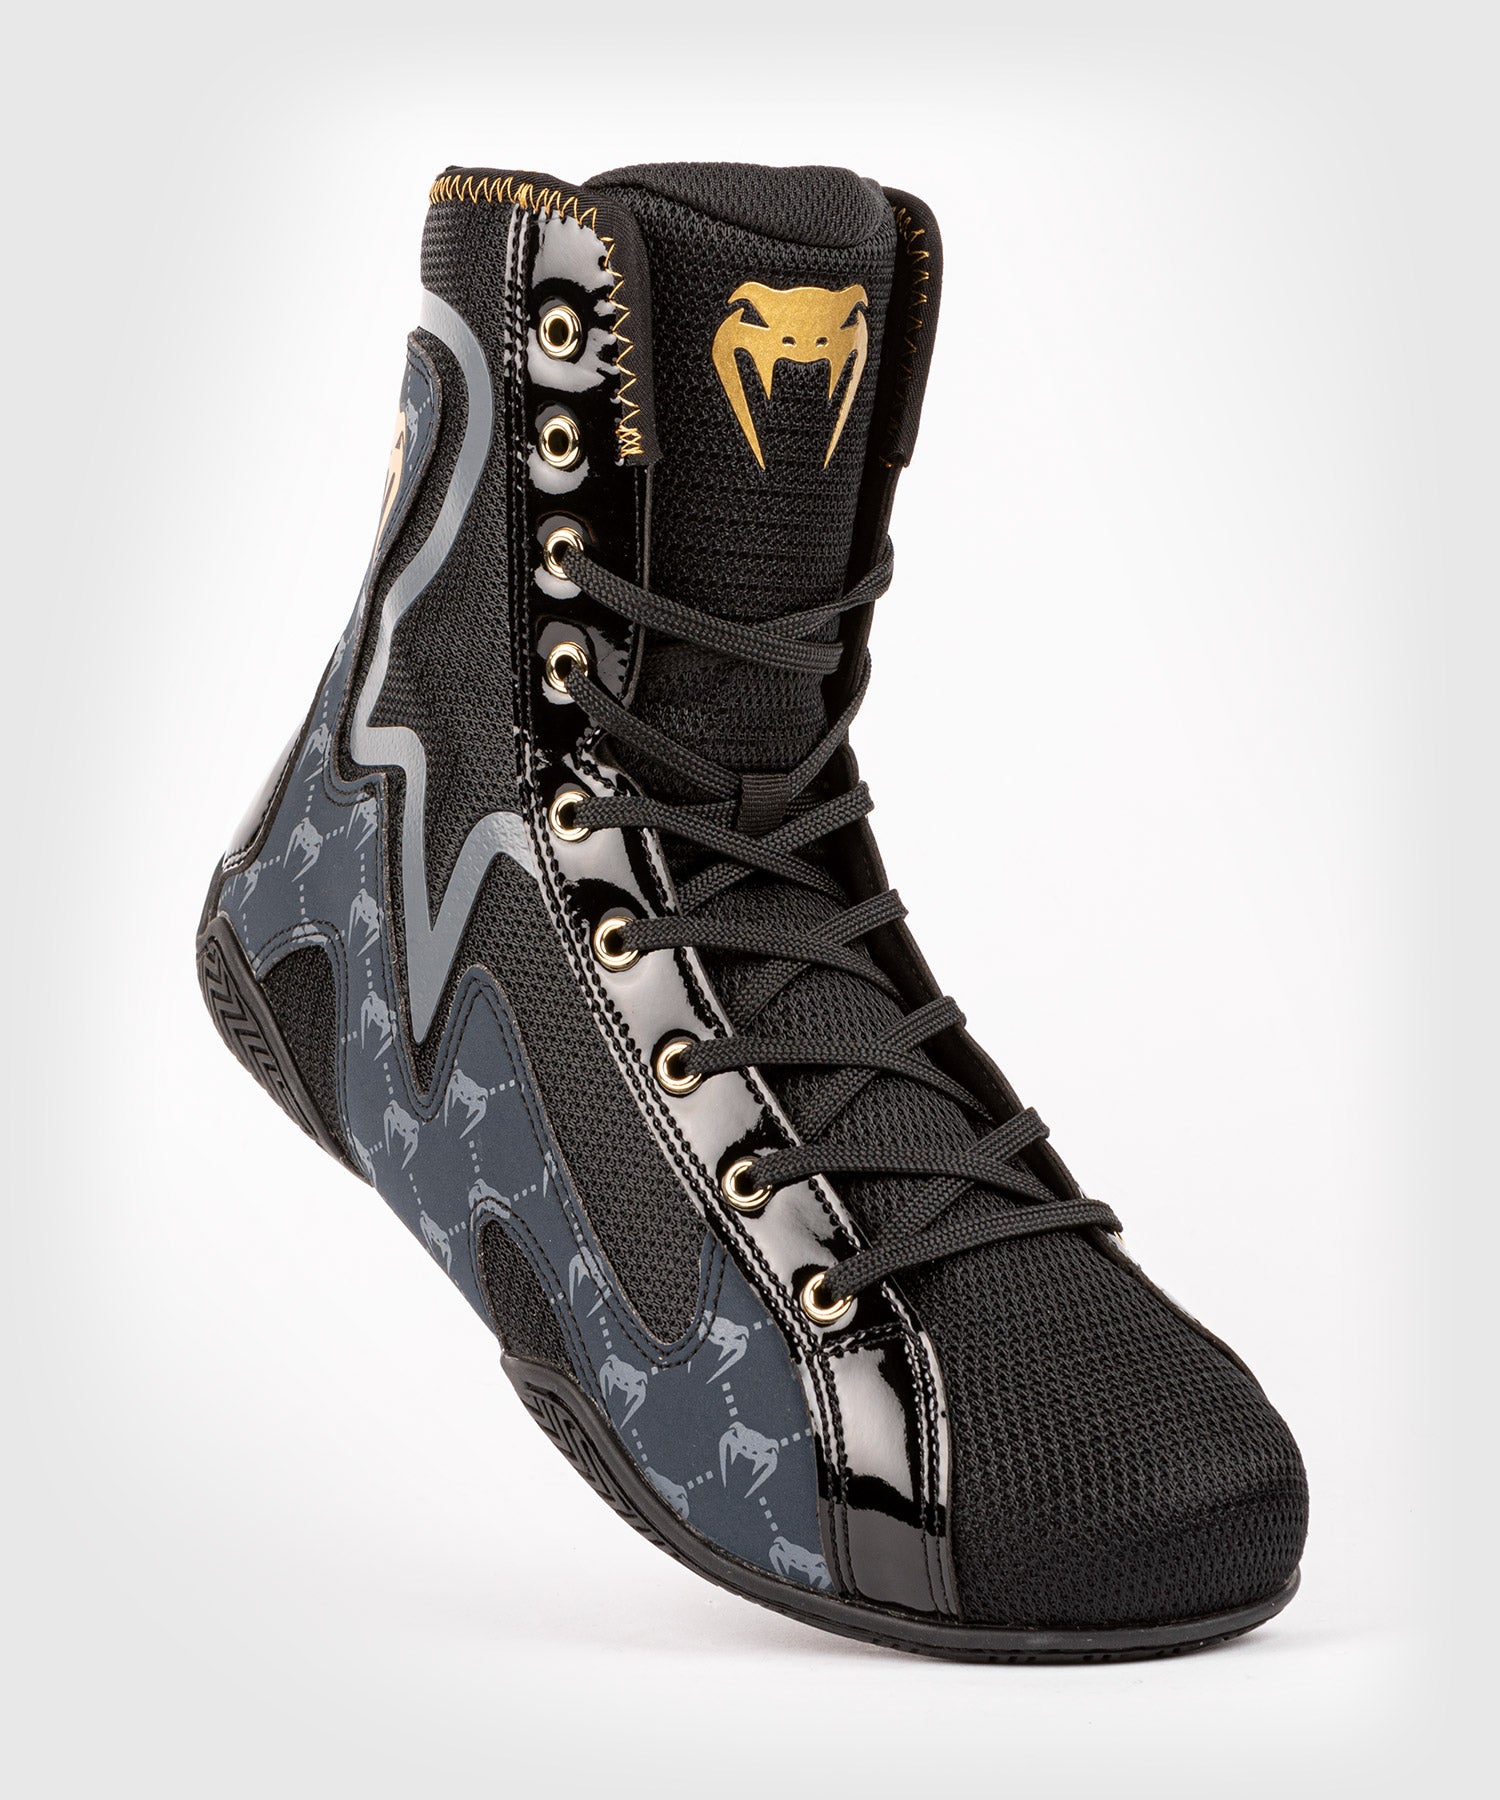 Chaussures de boxe Elion Navy